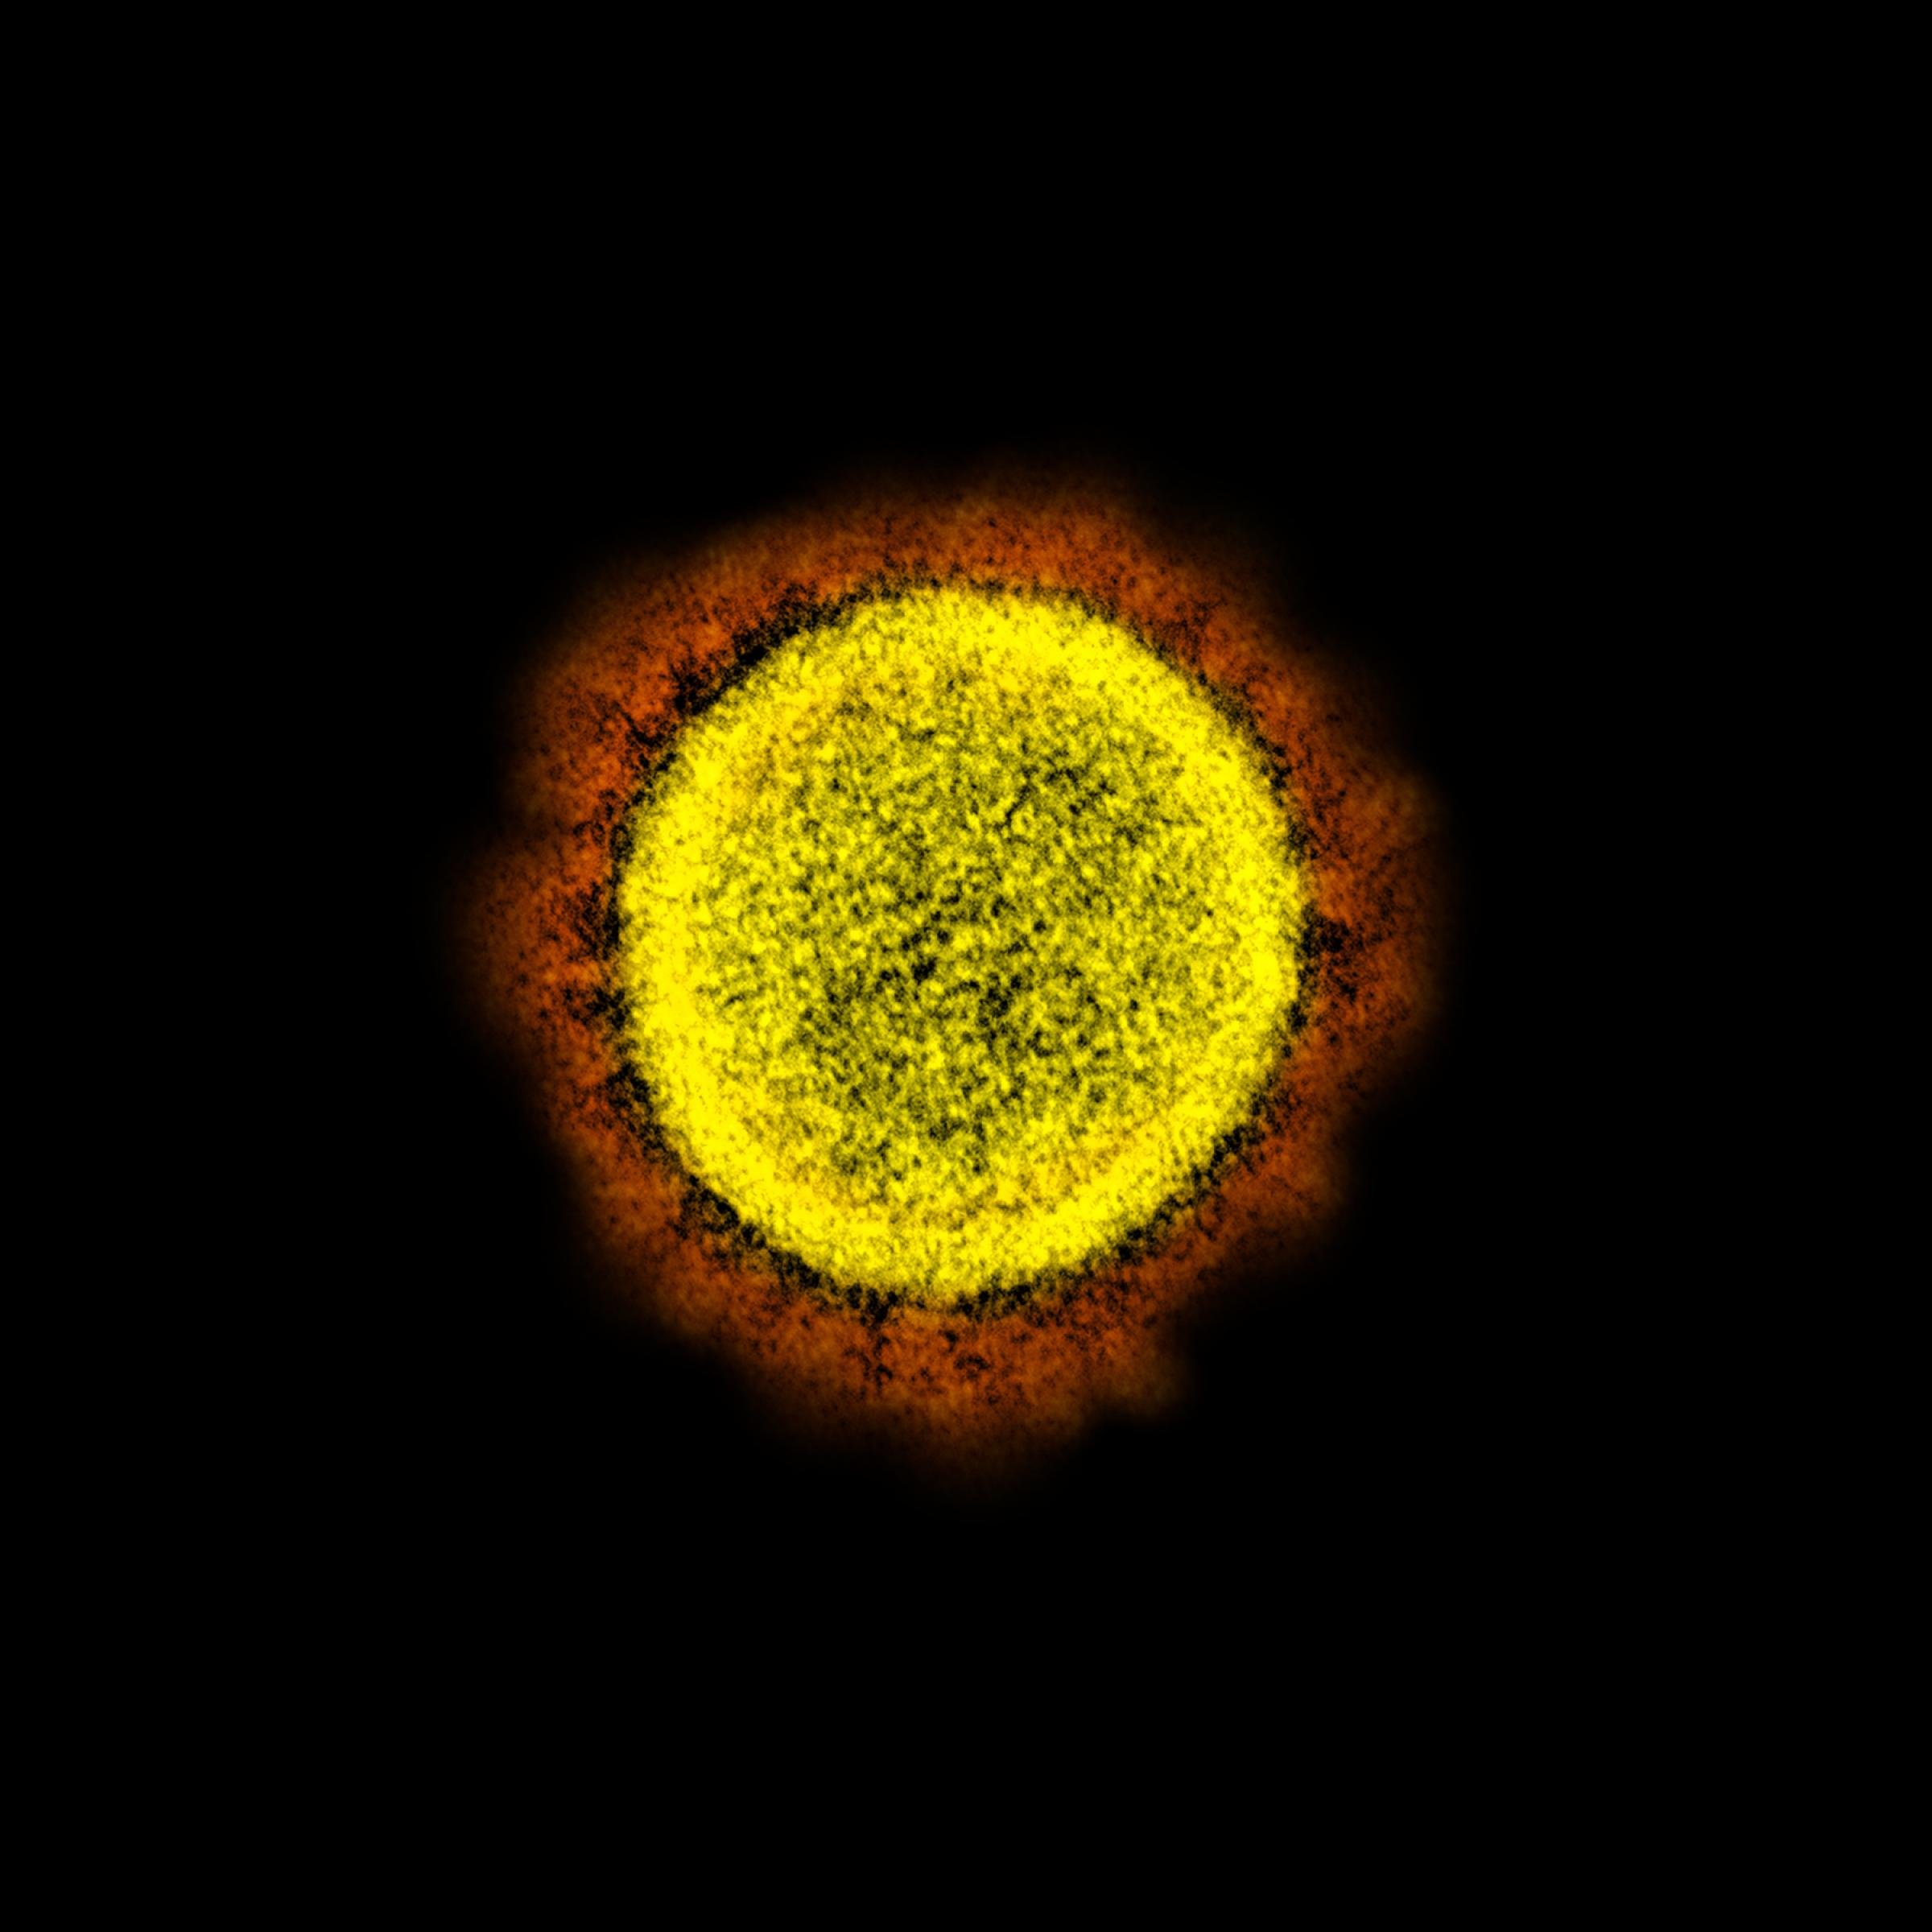 Das Bild zeigt das Coronavirus. Es ist kreisförmig, mit spornartigen Aufsätzen auf der Hülle. Seine Größe beträgt rund 120 Nanometer.